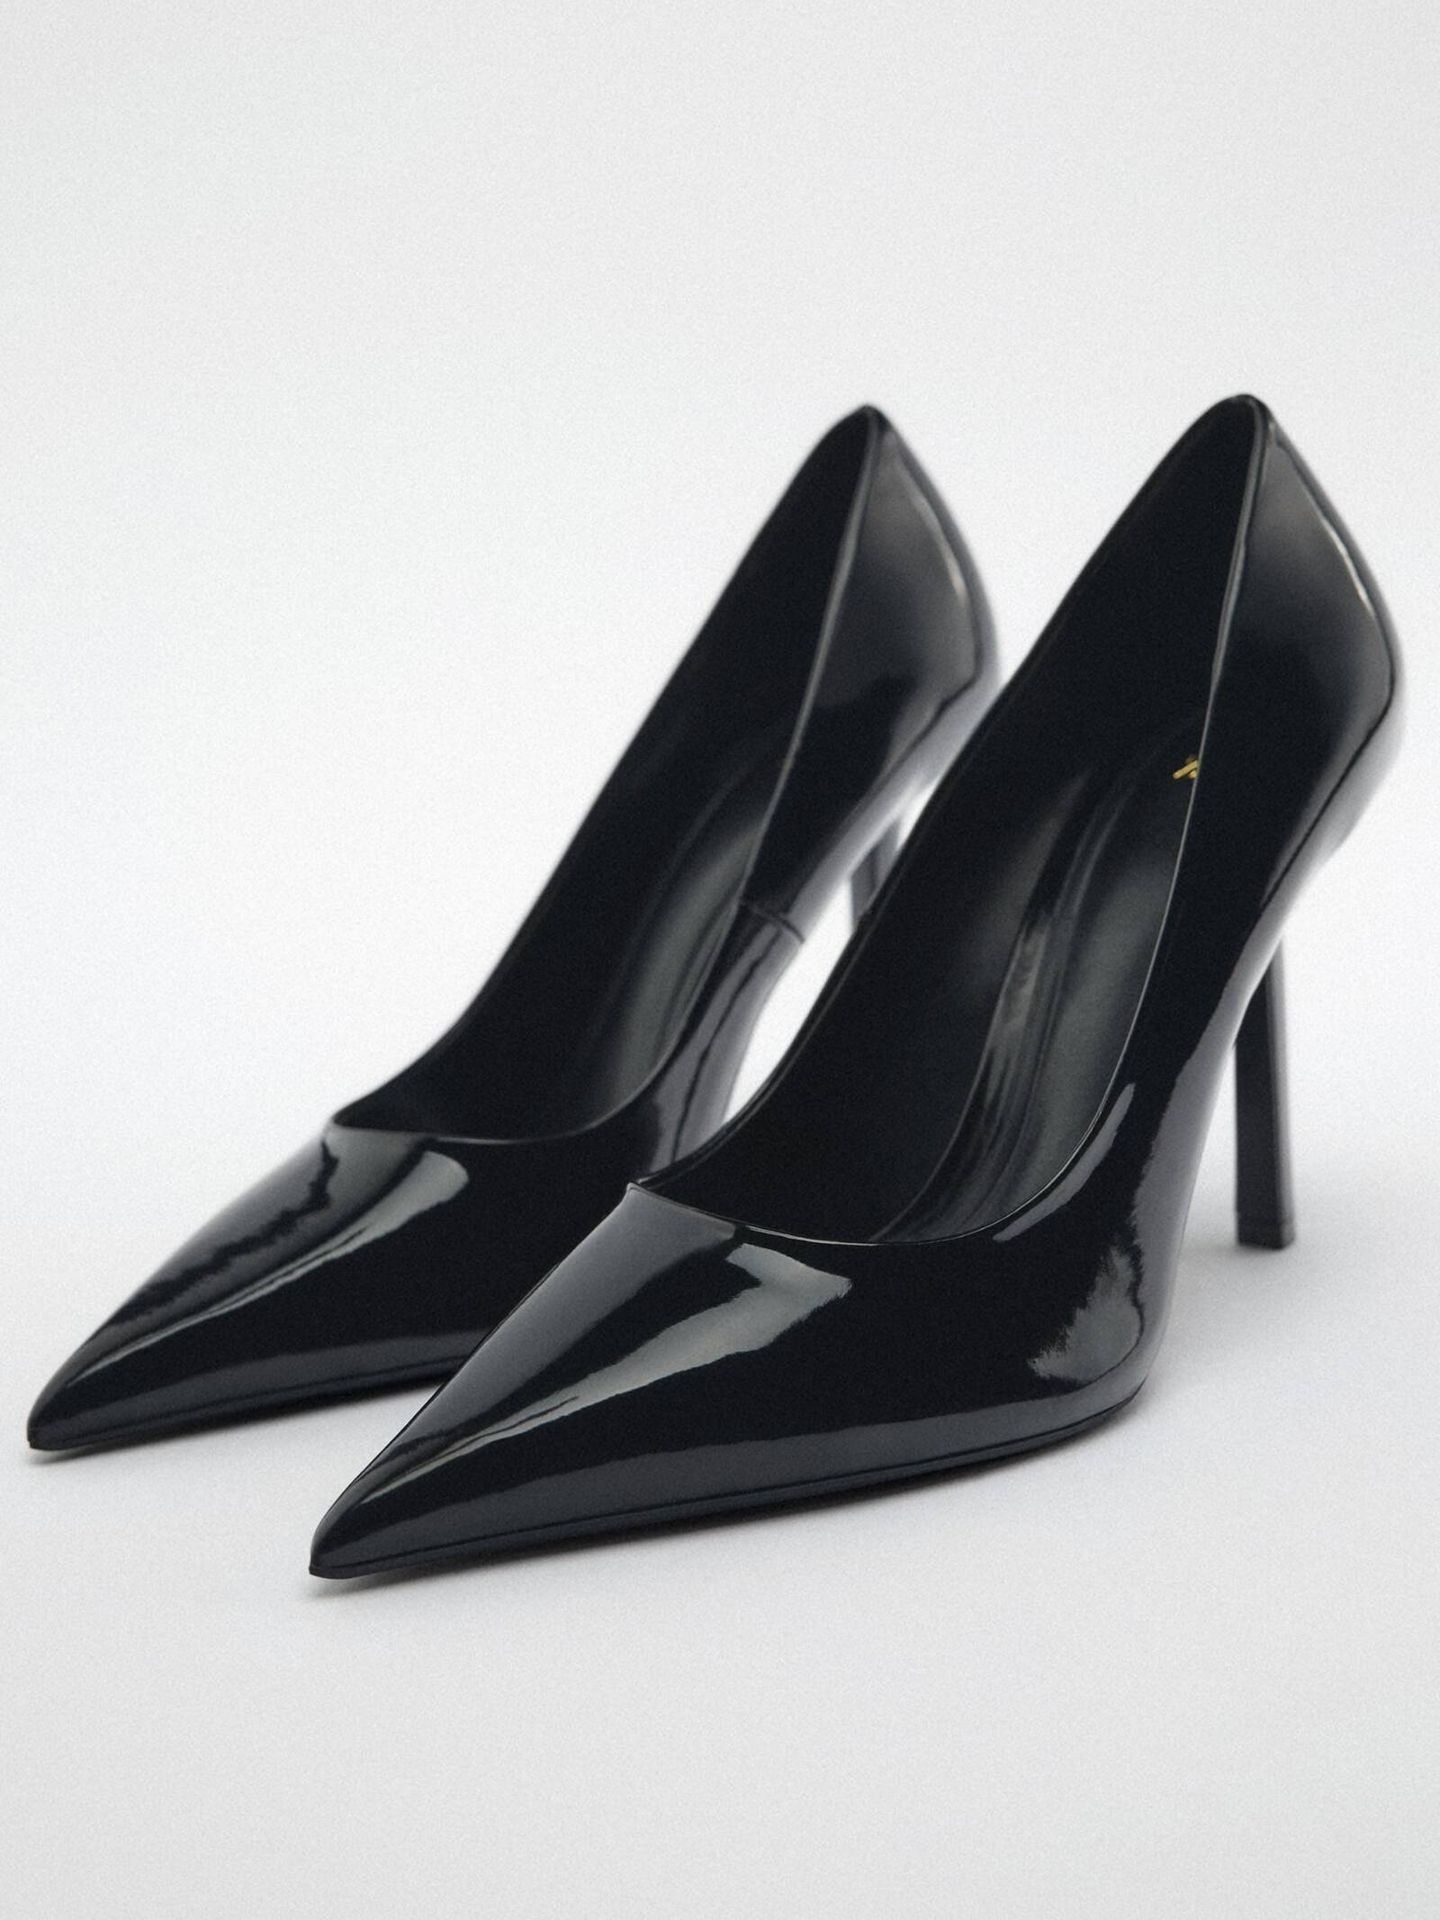 Zapatos de tacón de Zara, inspirándonos en el look de la reina Letizia. (Cortesía)